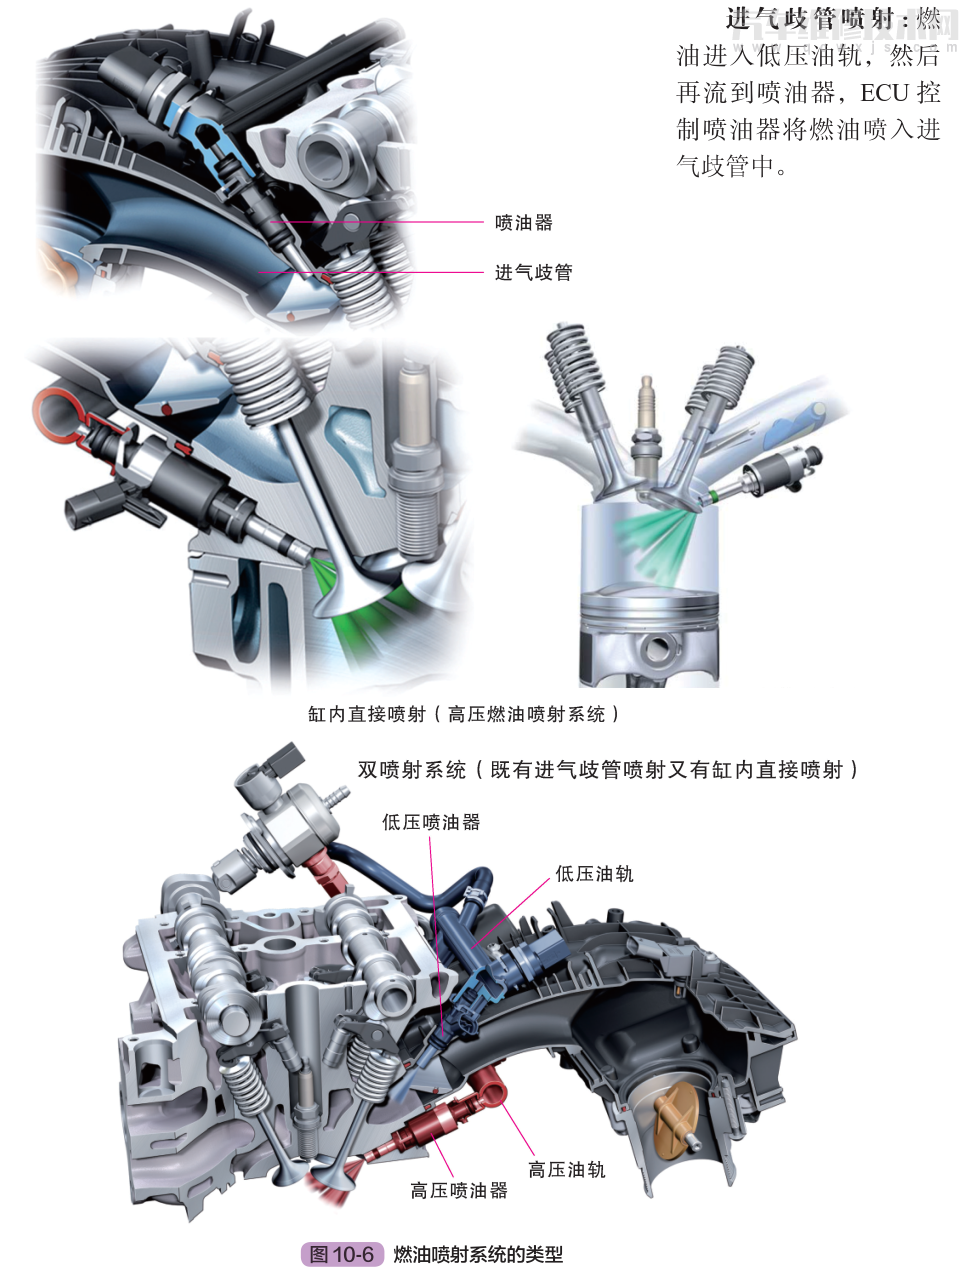 的各种发动机工作 参数,按照 ecu 中设定的控制程序,通过控制喷油器